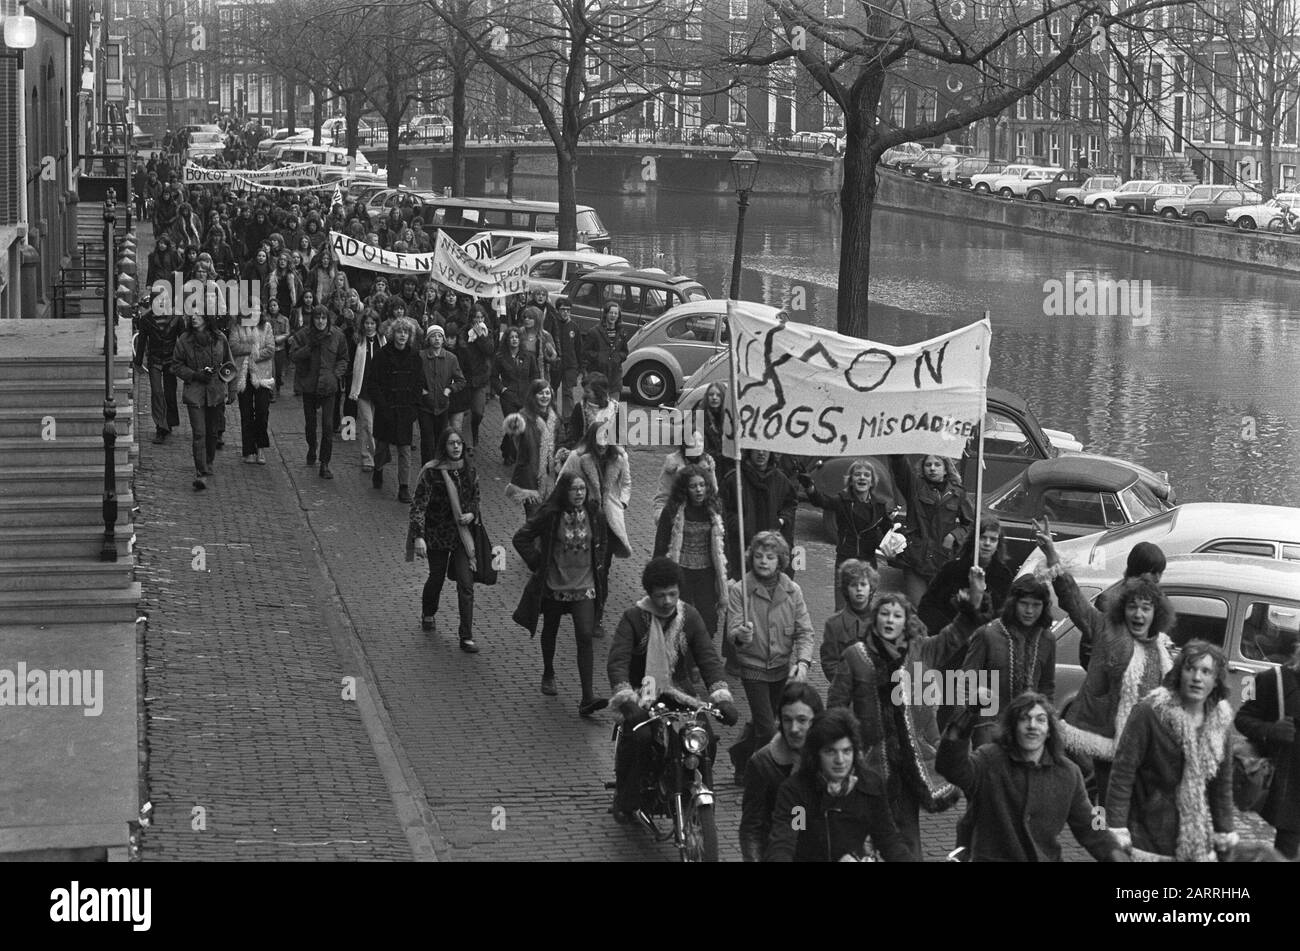 Scuole sciopero ad Amsterdam per protestare contro la guerra in Vietnam, i manifestanti al Prinsengracht Data: 18 gennaio 1973 Località: Amsterdam, Noord-Holland Parole Chiave: SCHOLIER, manifestanti, guerre, proteste Foto Stock